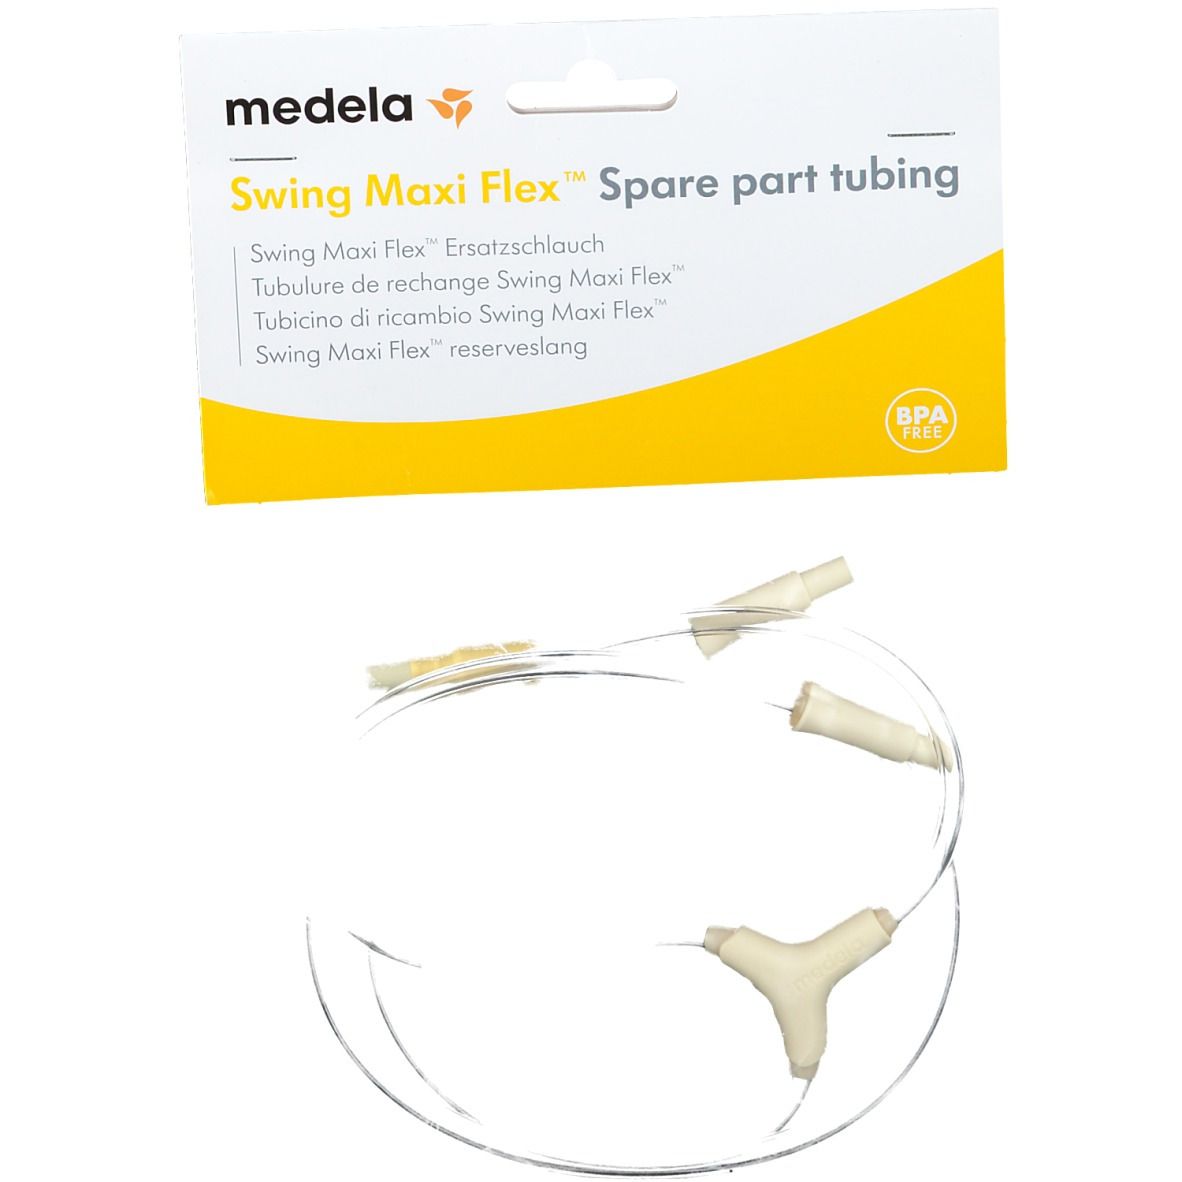 Medela Swing Maxi Flex Ersatzschlauch